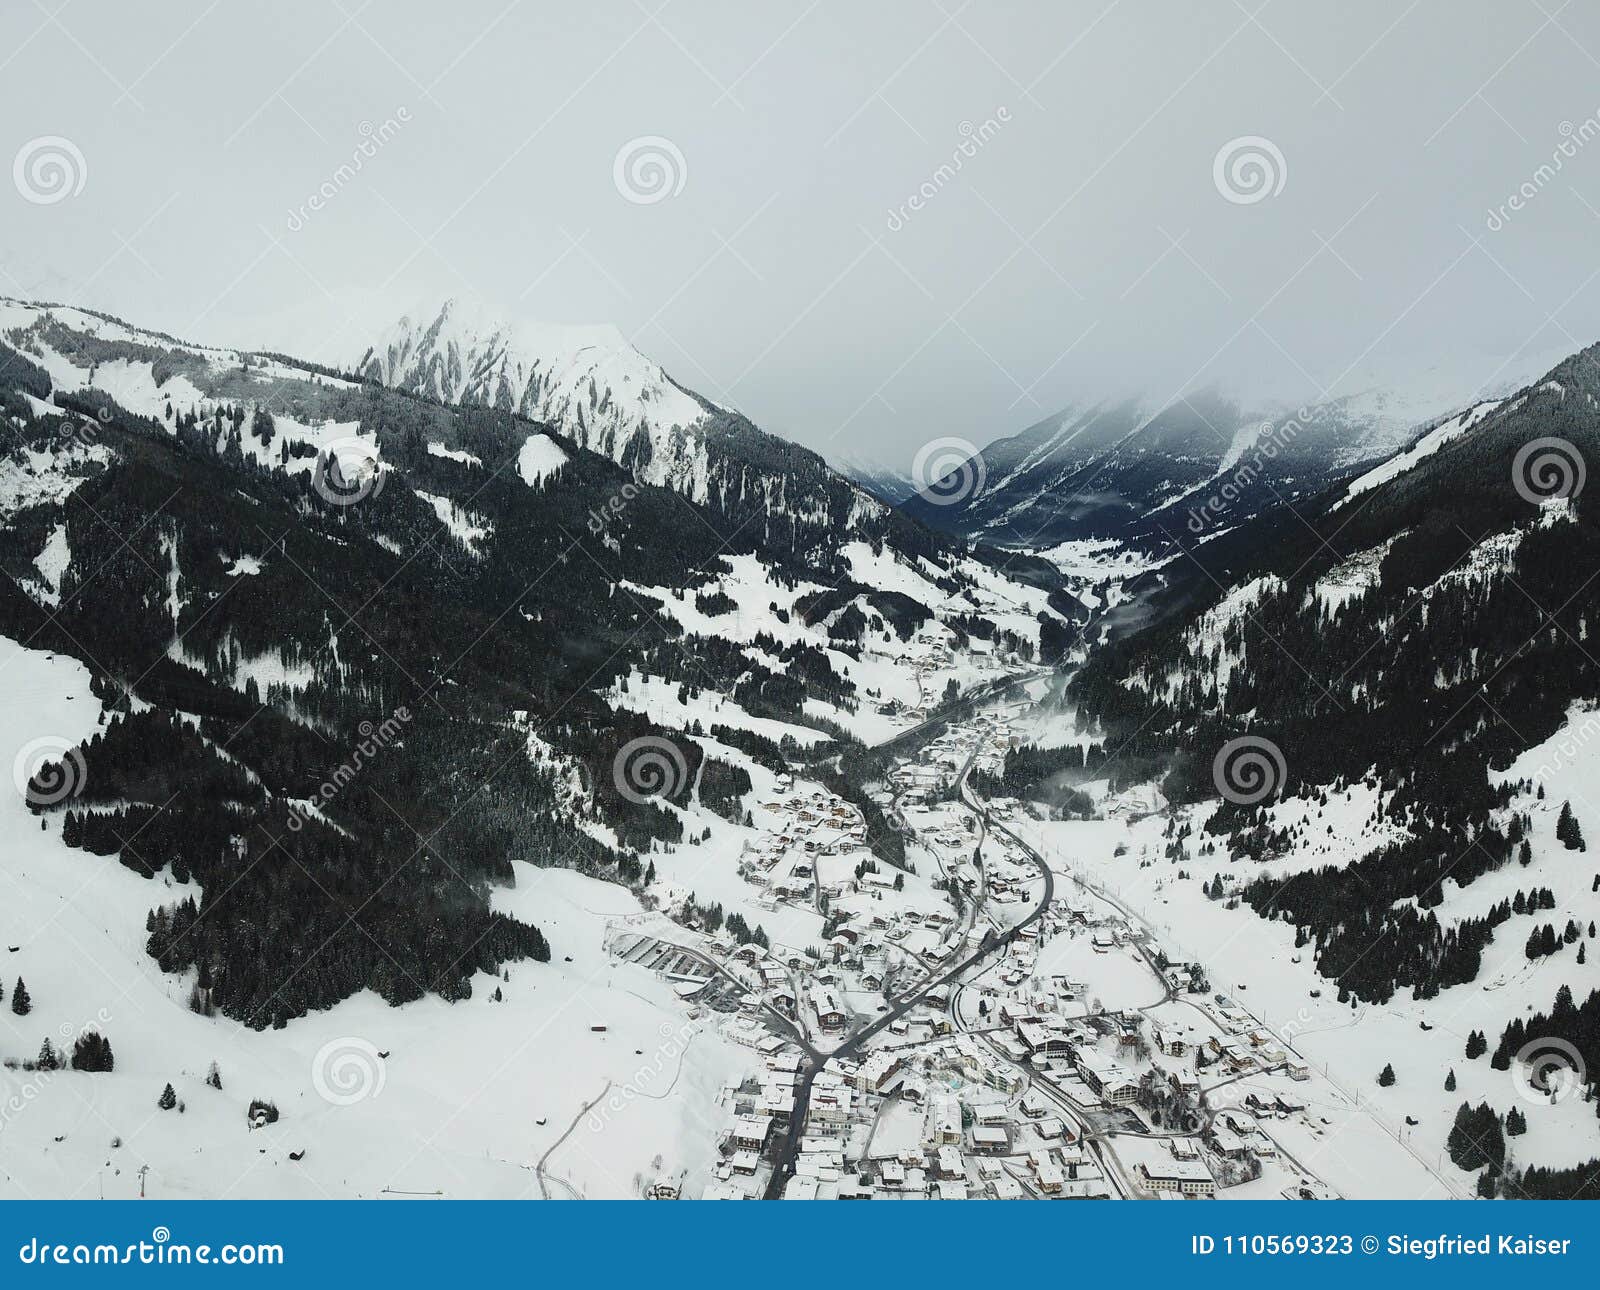 Belle vue près de Lermoos, Autriche. Belle vue des montagnes en hiver près de Lermoos et d'Ehrwald, Autriche, station de sports d'hiver